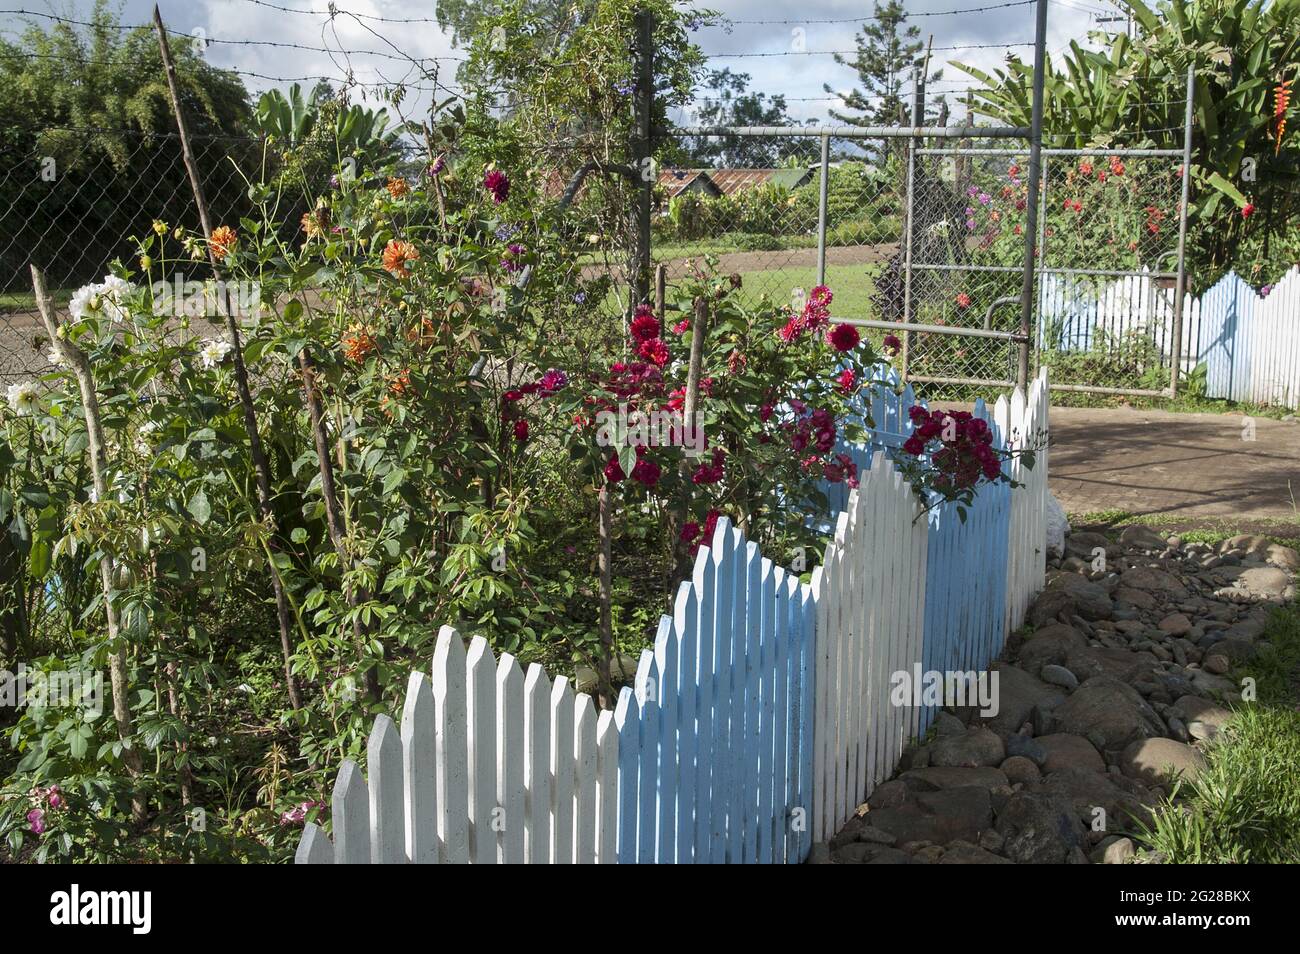 Papua New Guinea; Goroka; The garden is fenced with a wooden blue fence. Der Garten ist mit einem blauen Holzzaun eingezäunt. Ogródek, drewniany płot Stock Photo